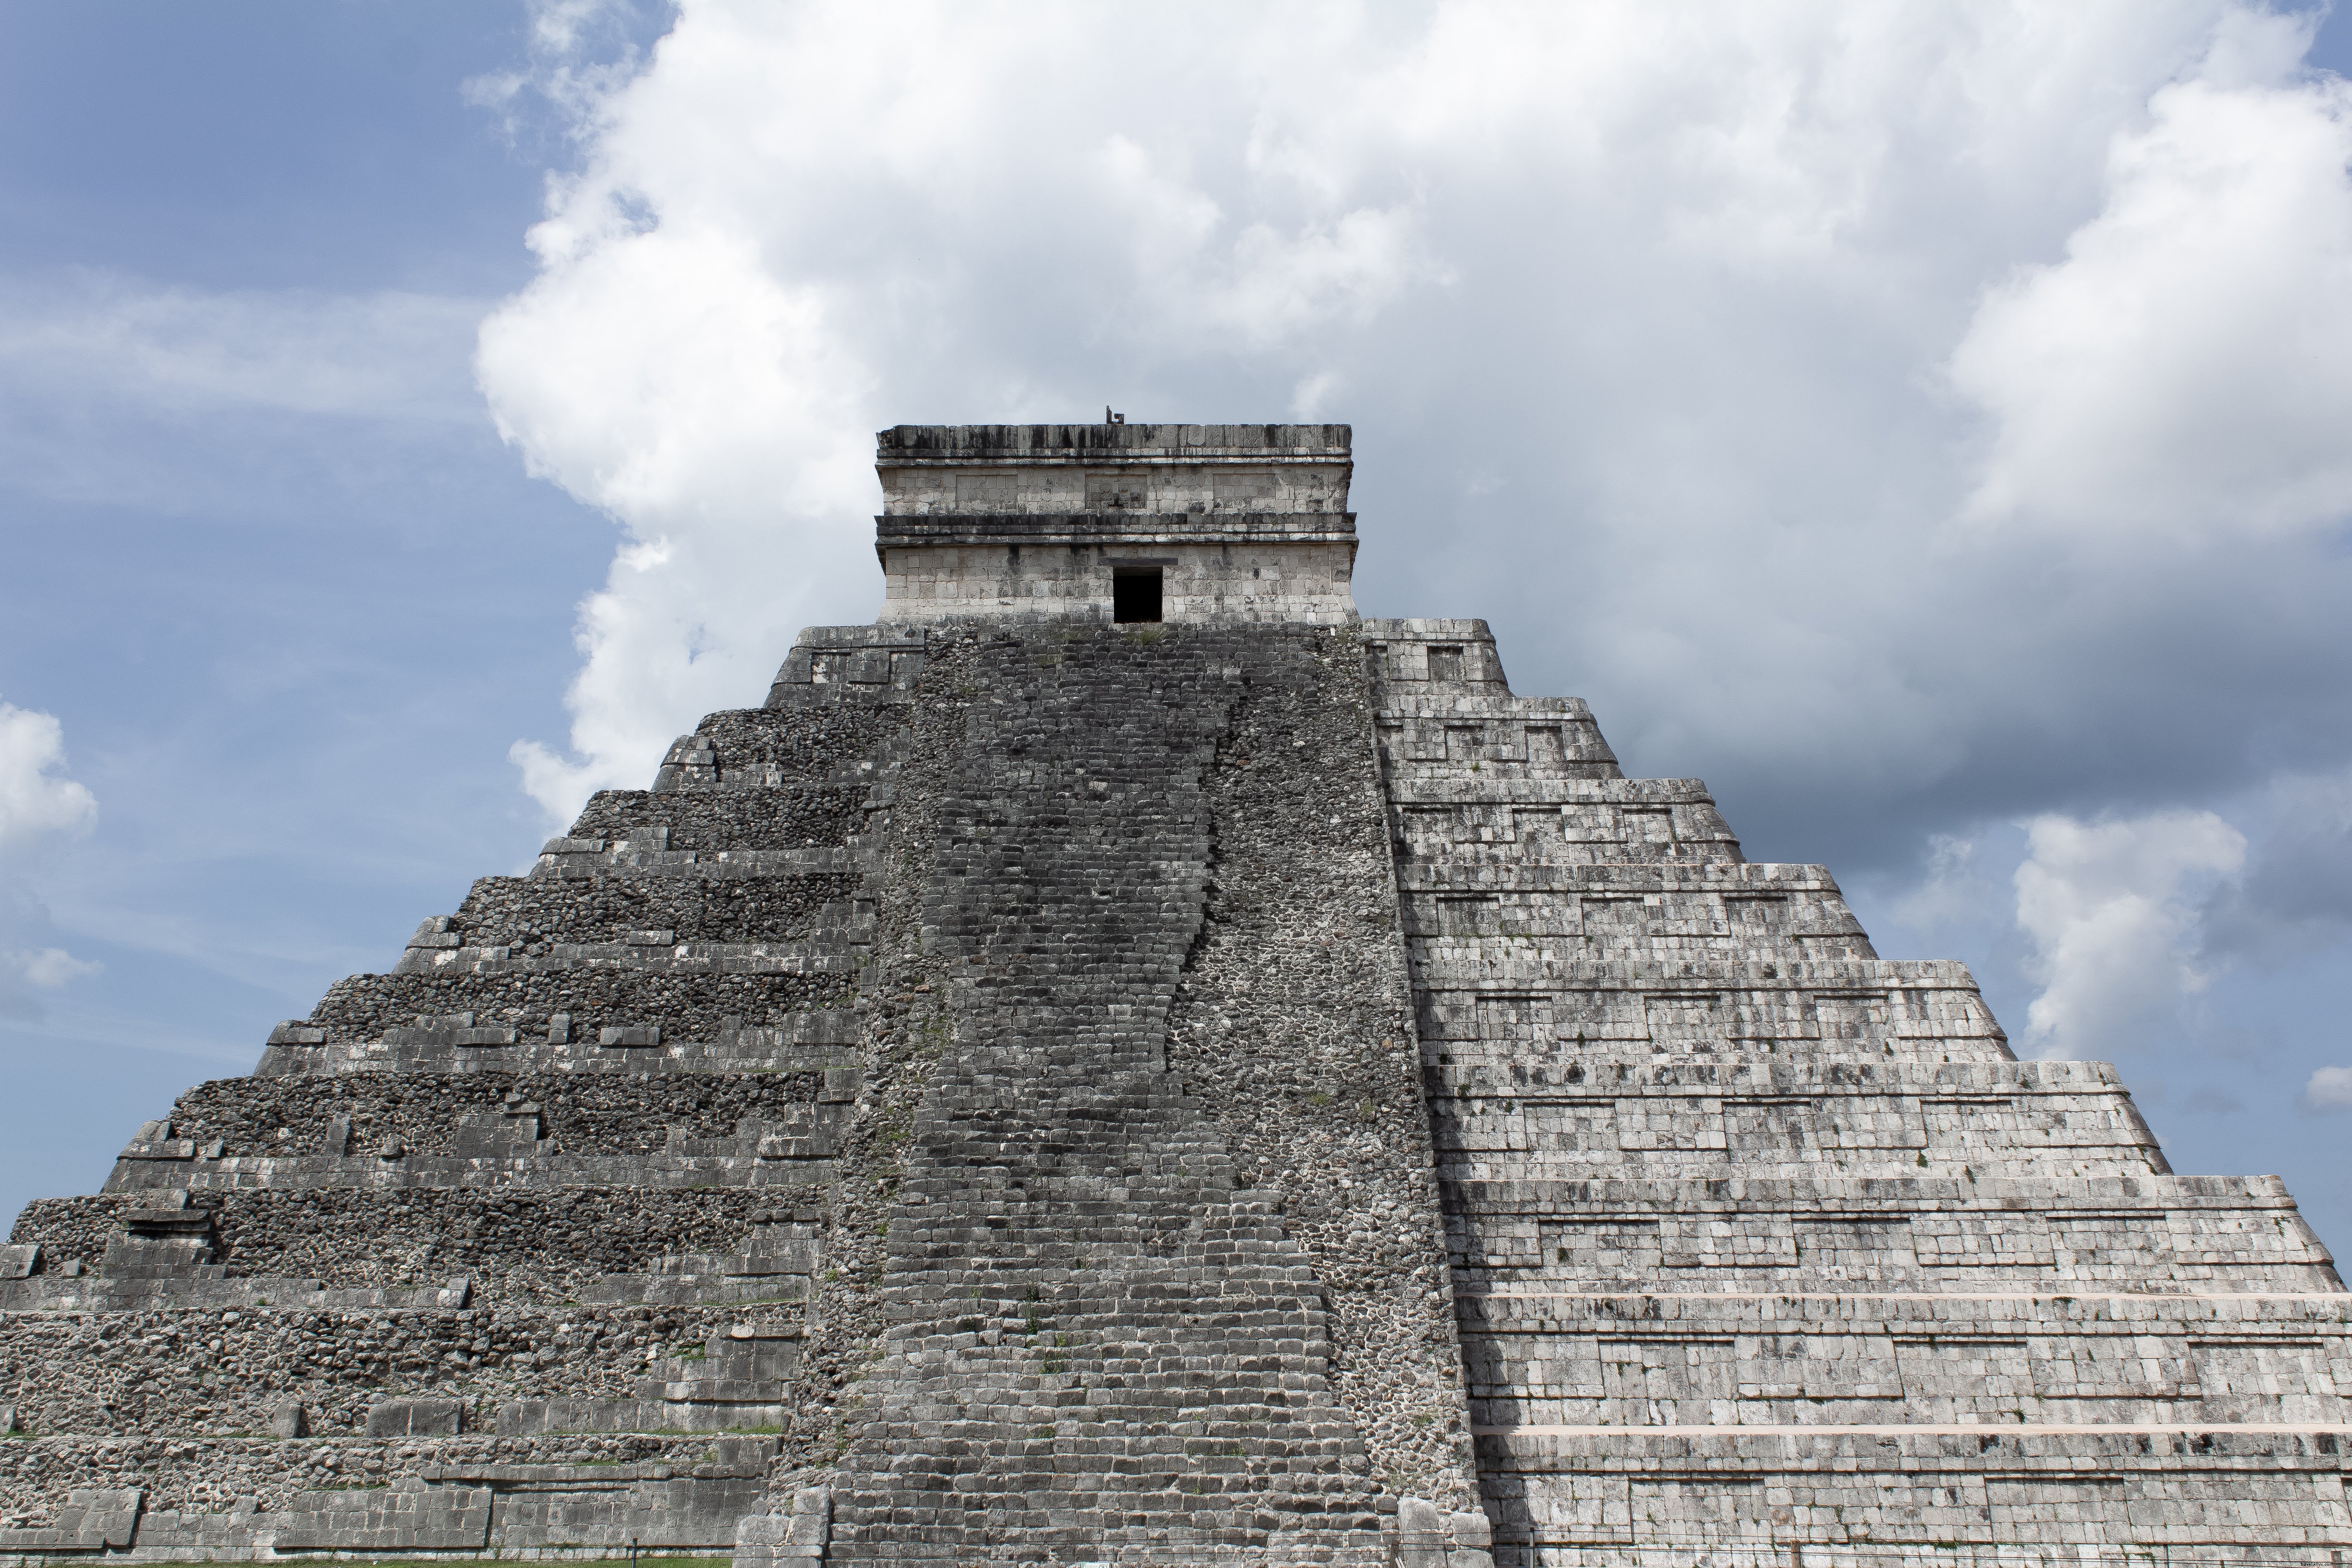 Pasos en ruinas de la foto de la pirámide antigua